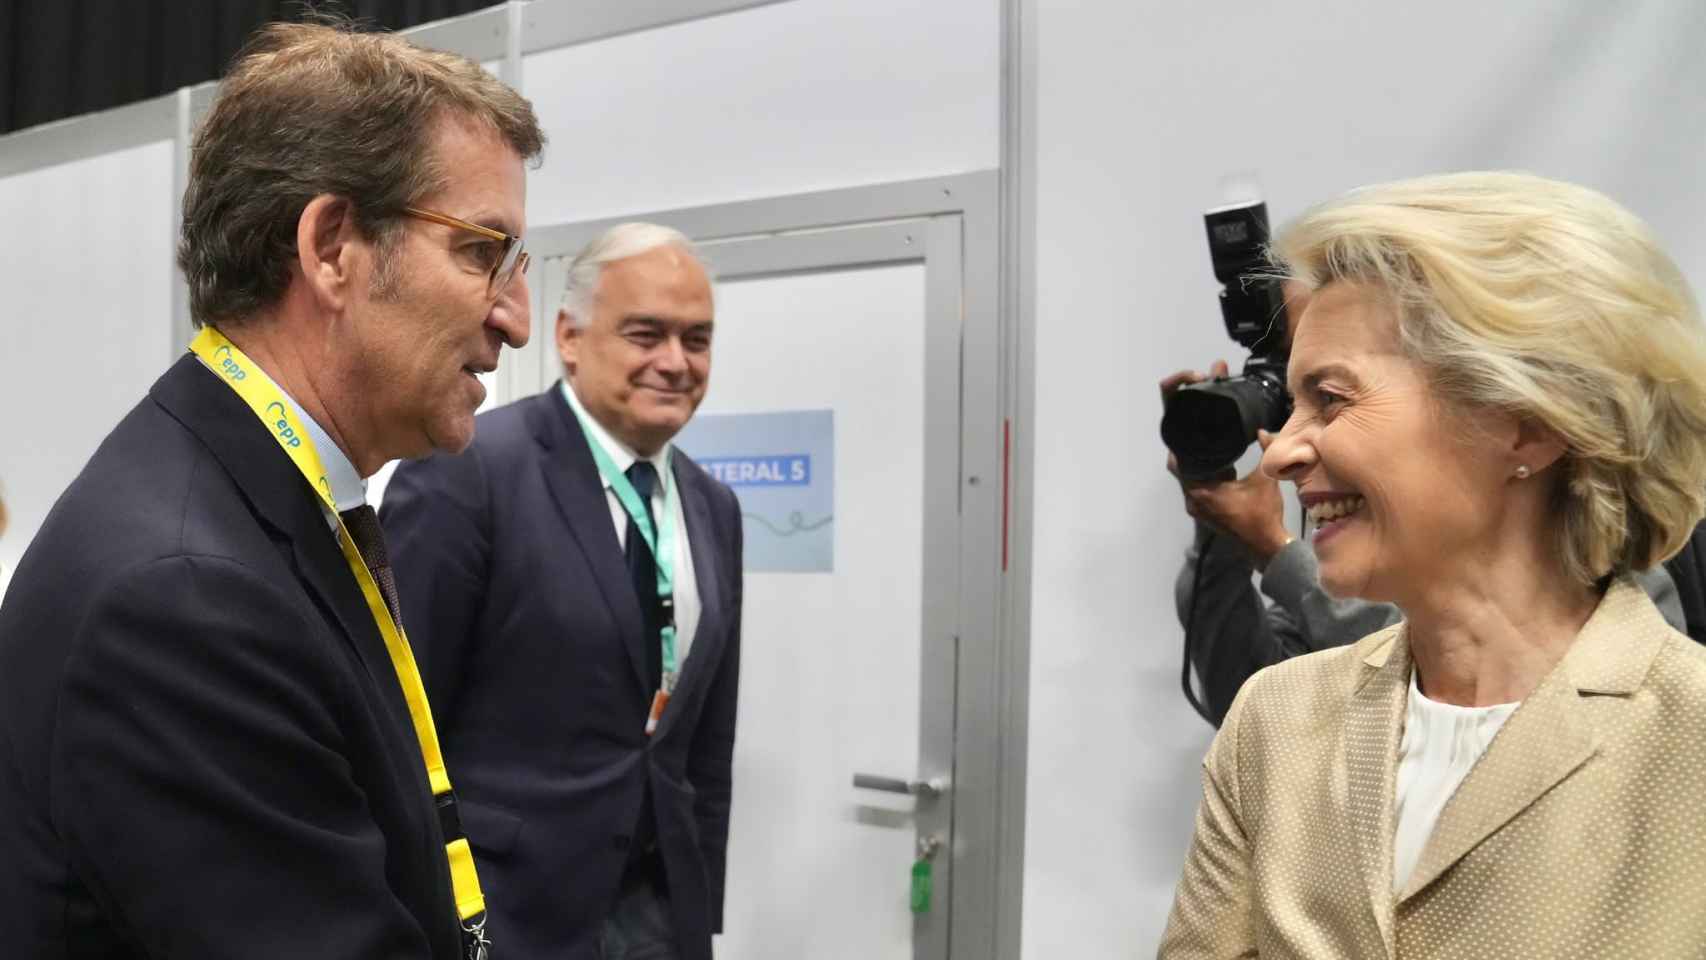 Alberto Núñez Feijóo saluda a Ursula von der Leyen, en presencia de Esteban González Pons, durante el congreso del EPP en Rotterdam (Países Bajos).